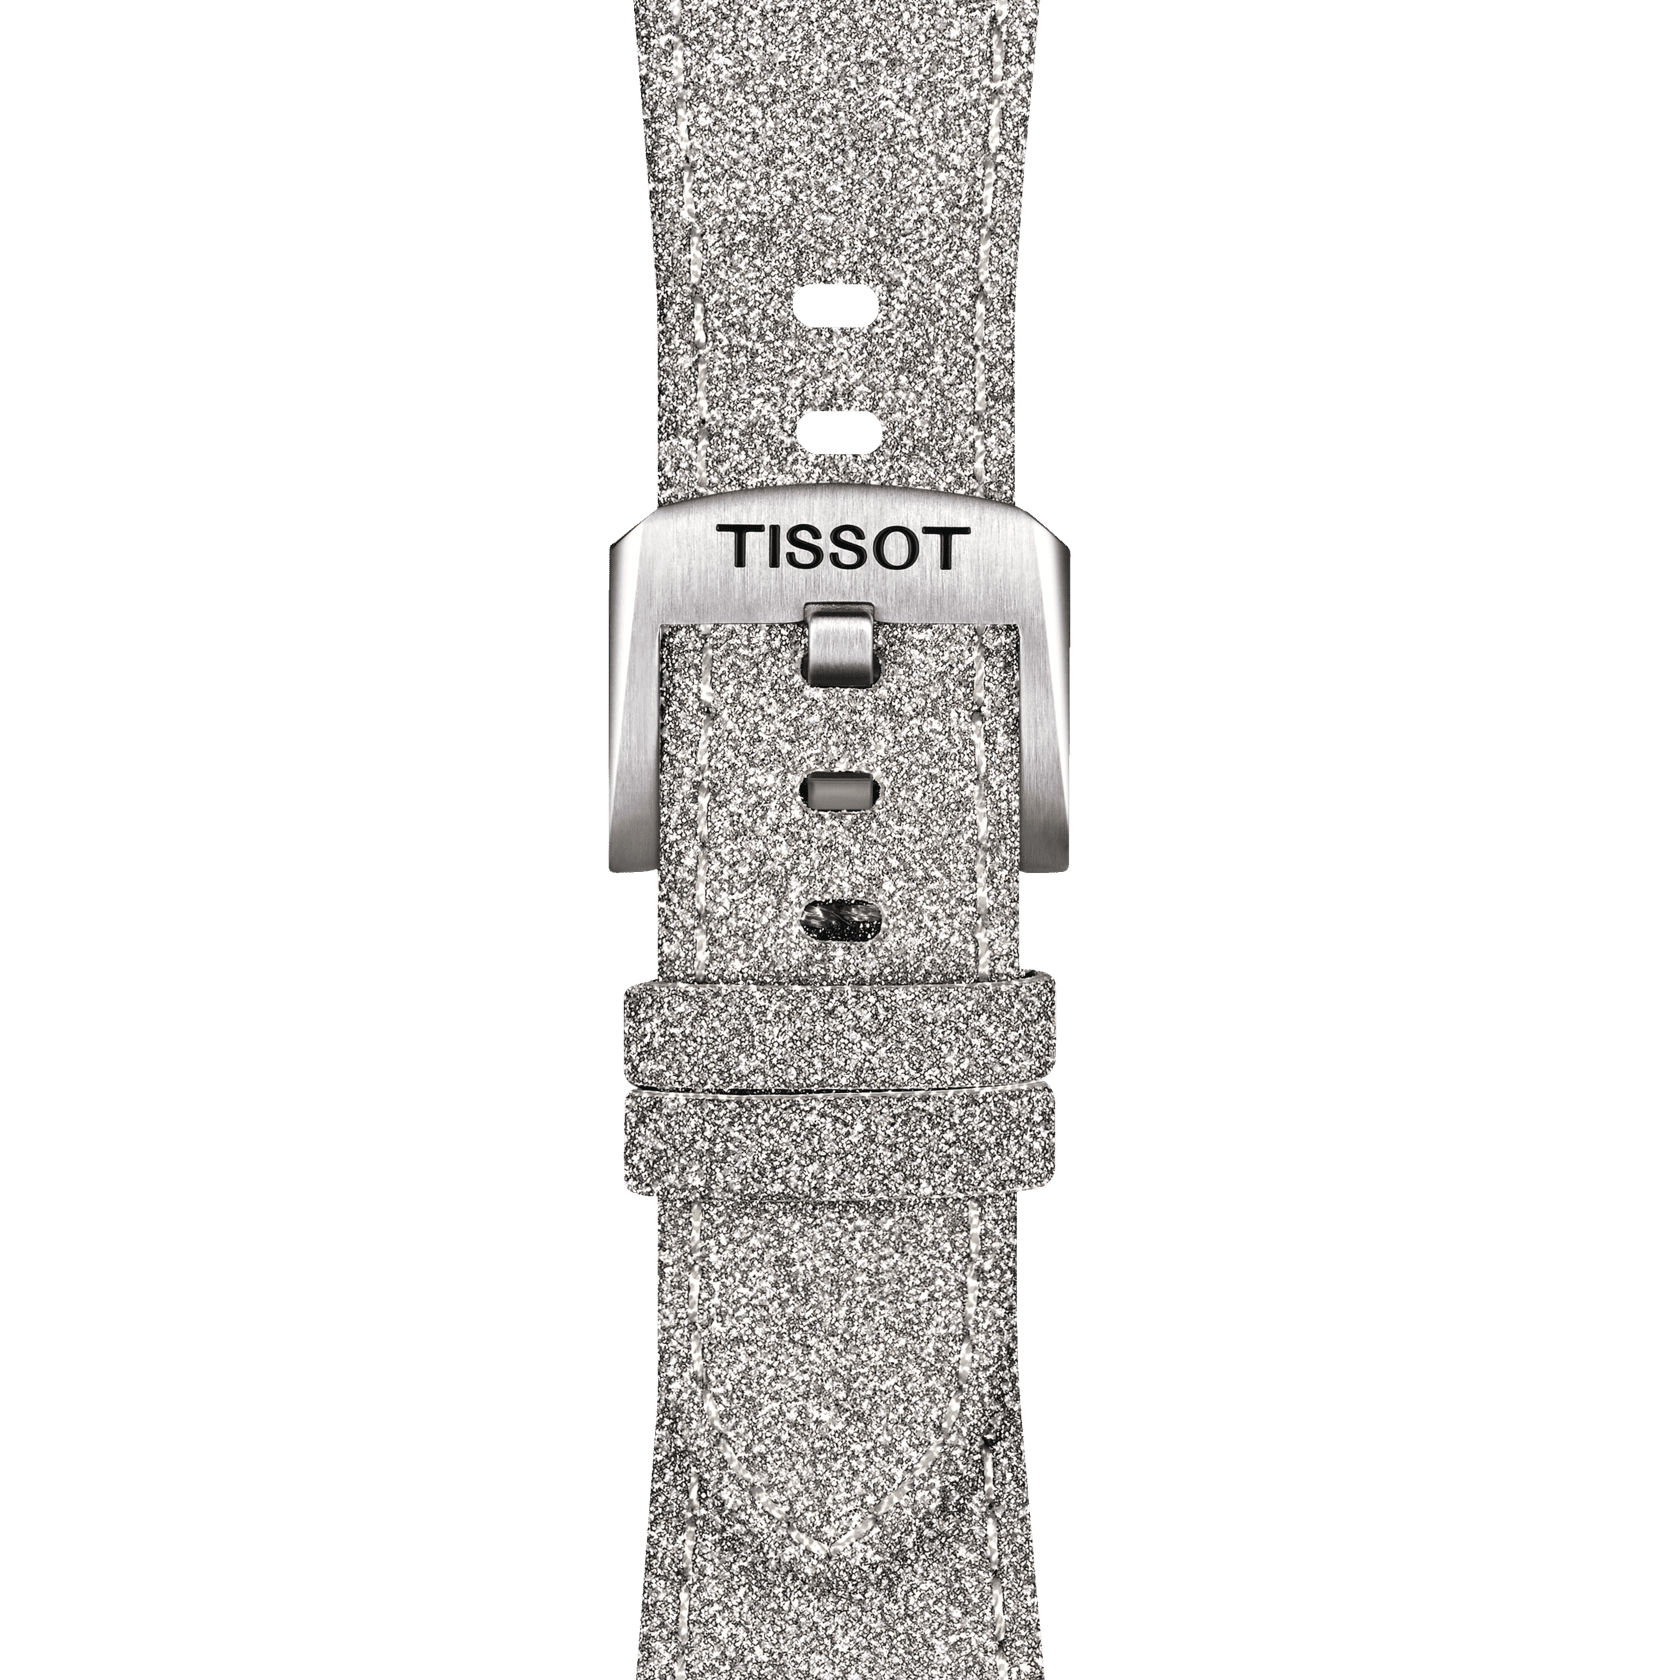 Bracelet Officiel Tissot PRX 35 Synthétique Gris